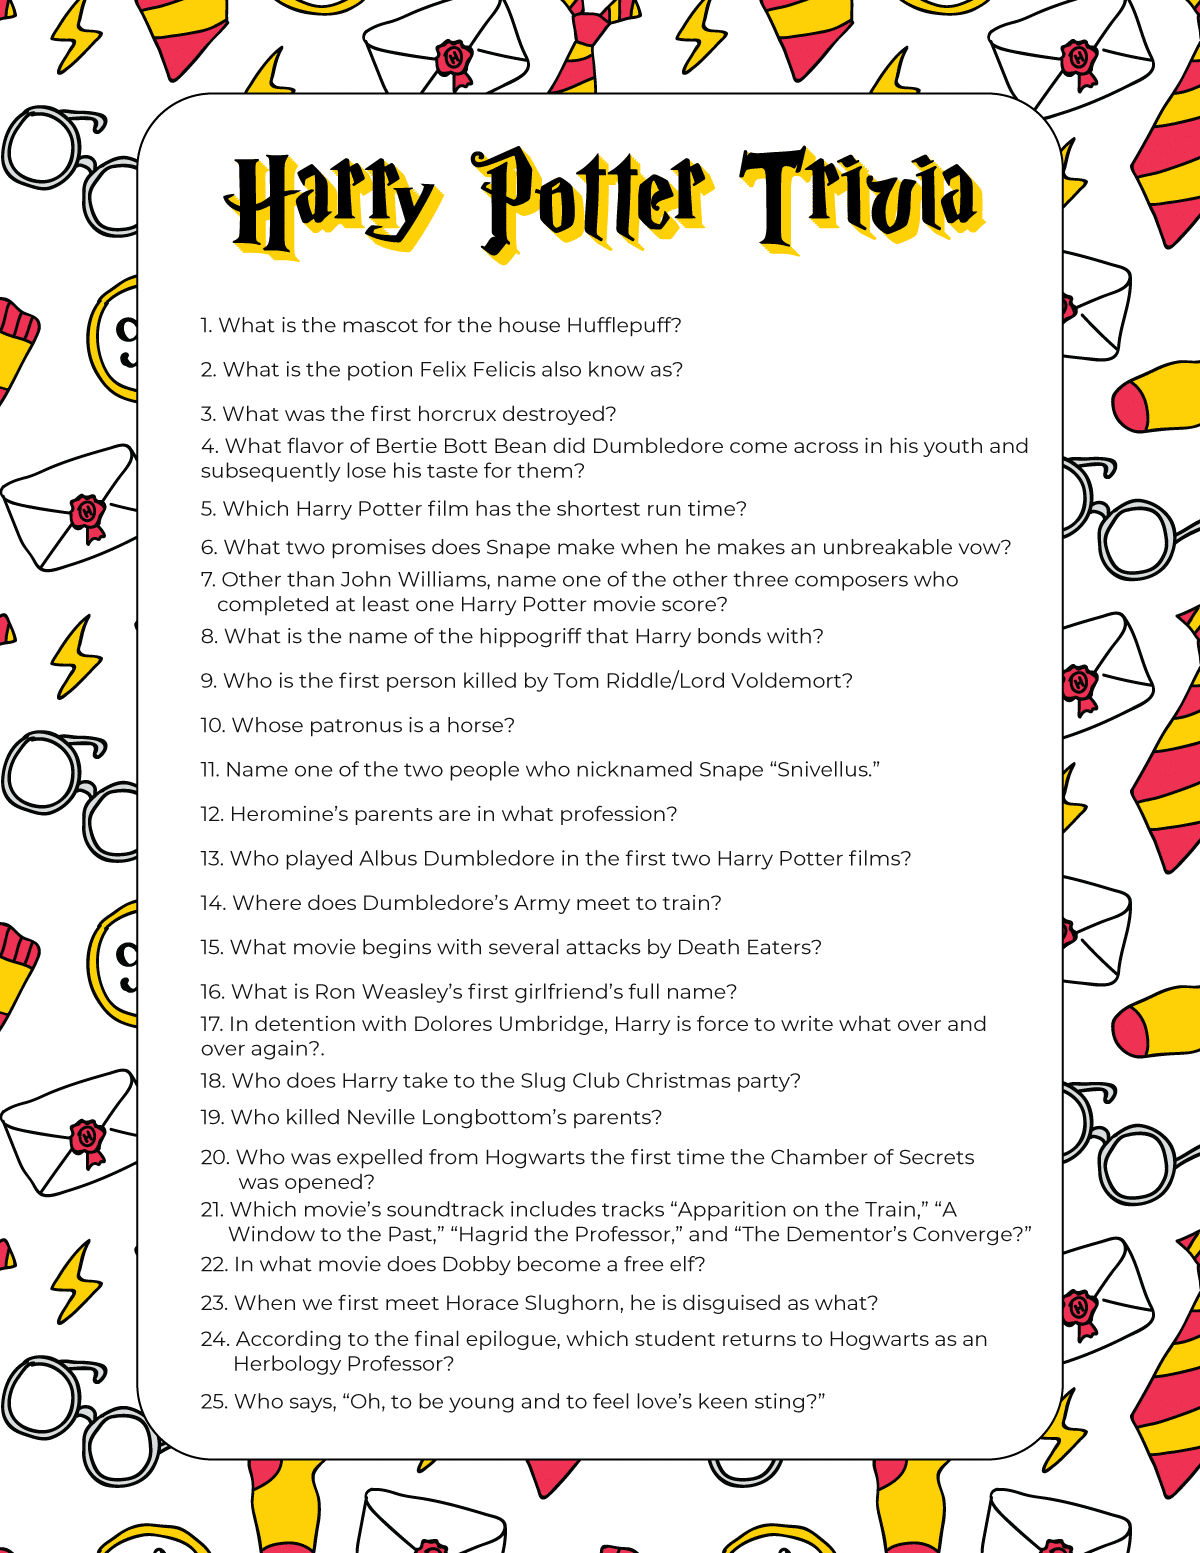 Harry Potter trivia-vragen op een witte achtergrond